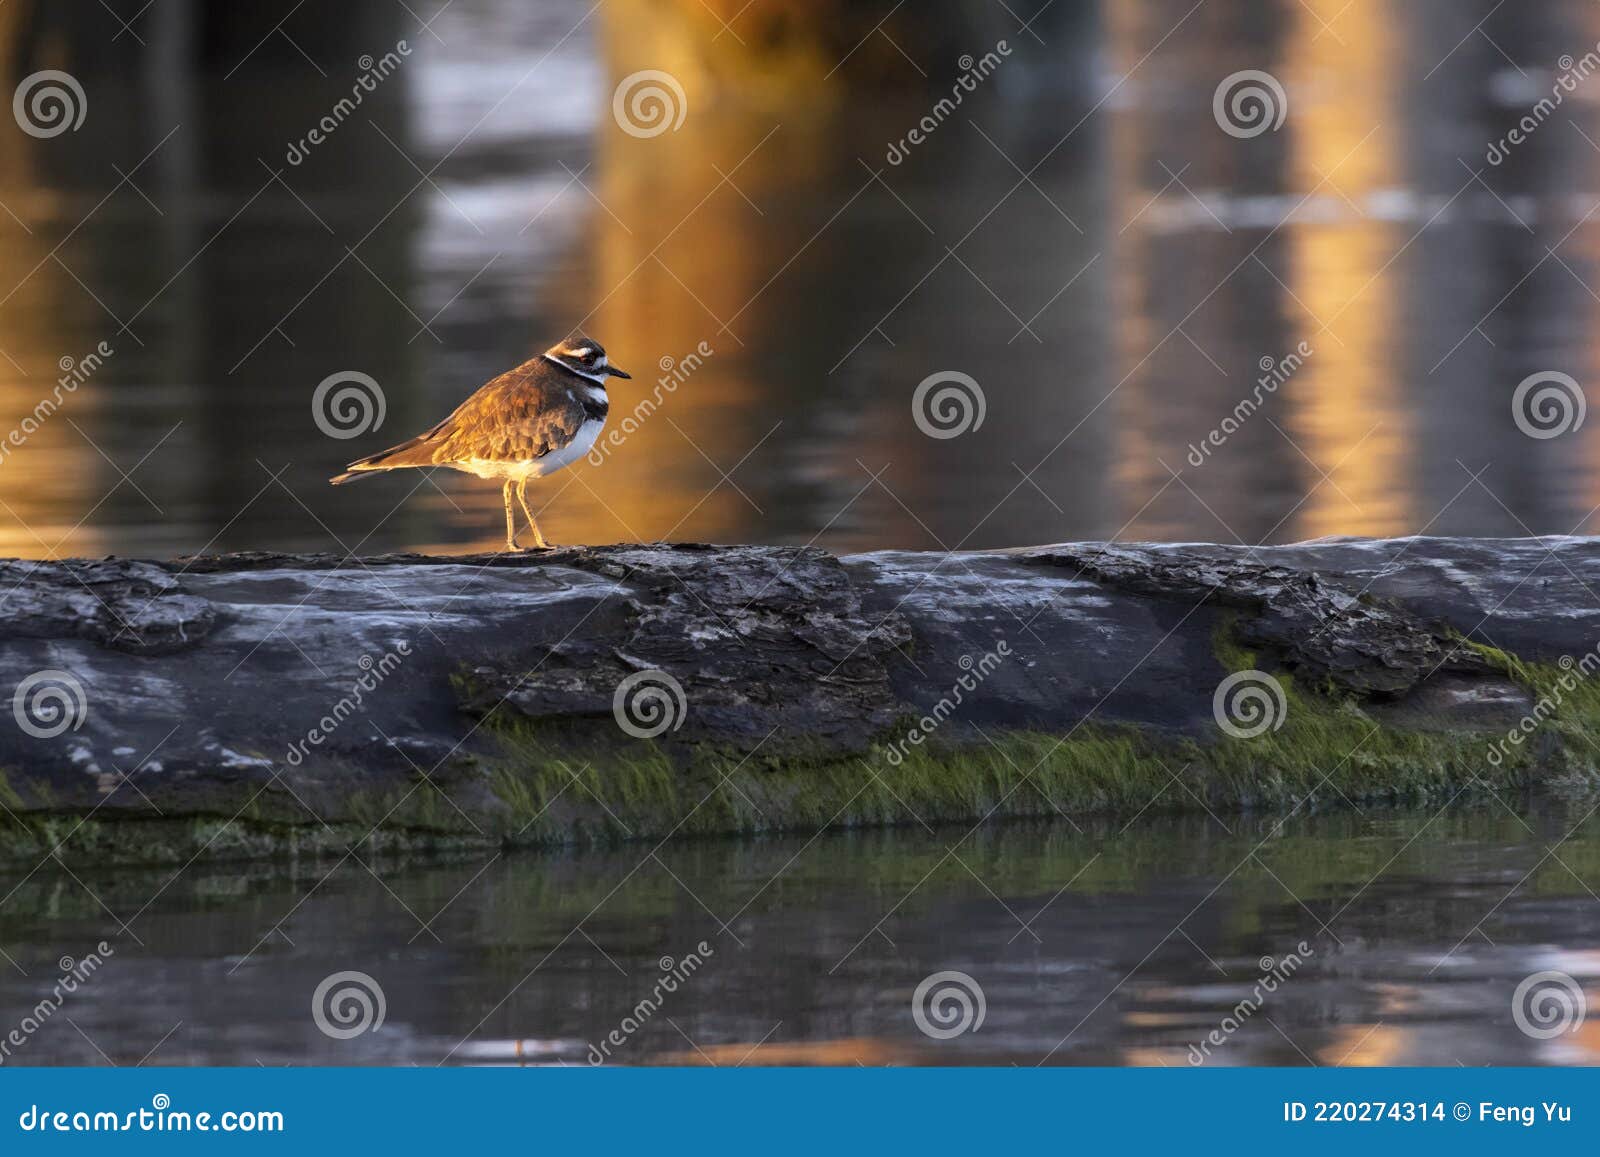 killdeer shorebird on floating log